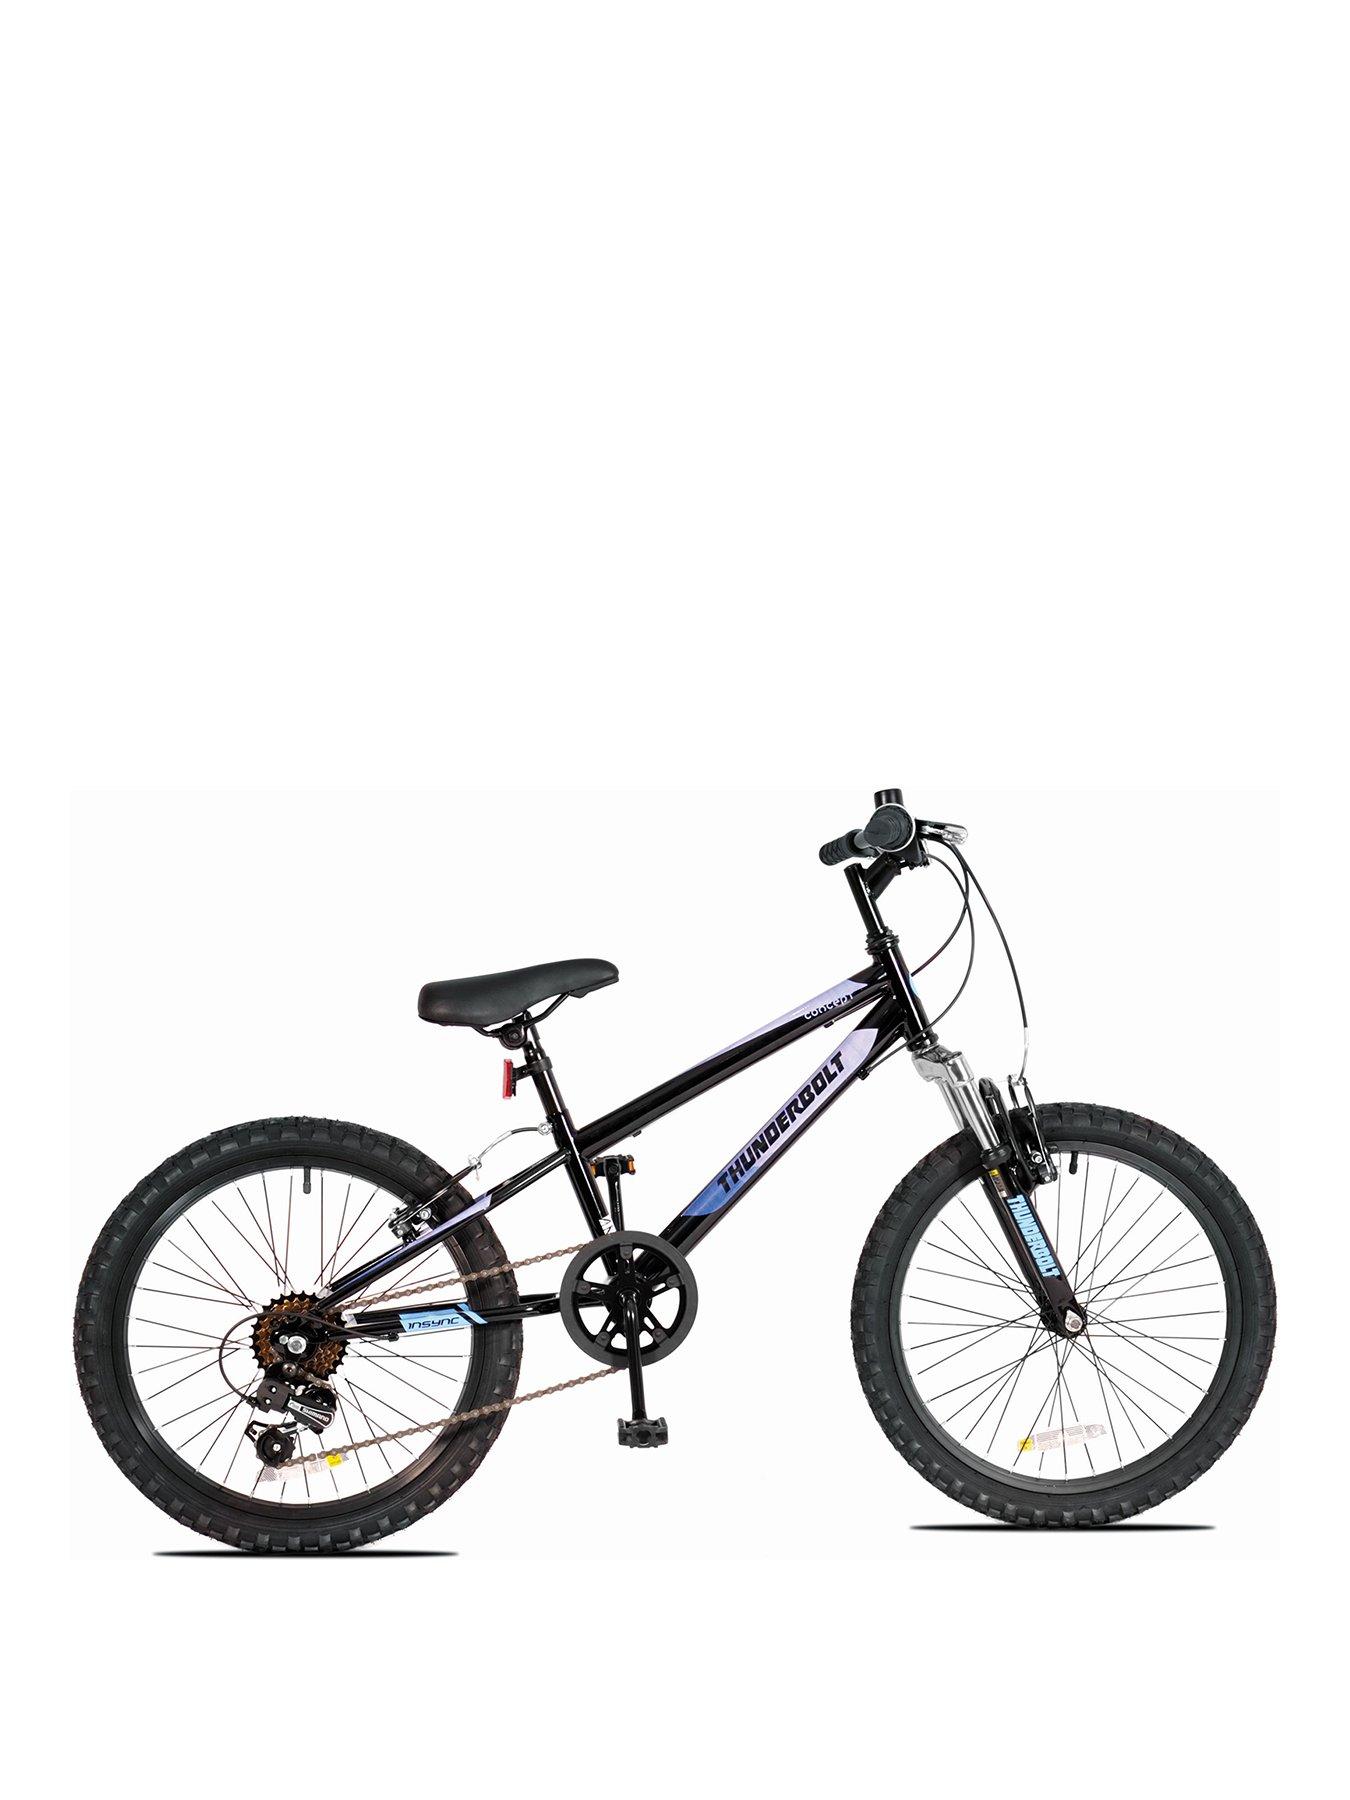 13 inch frame mountain bike